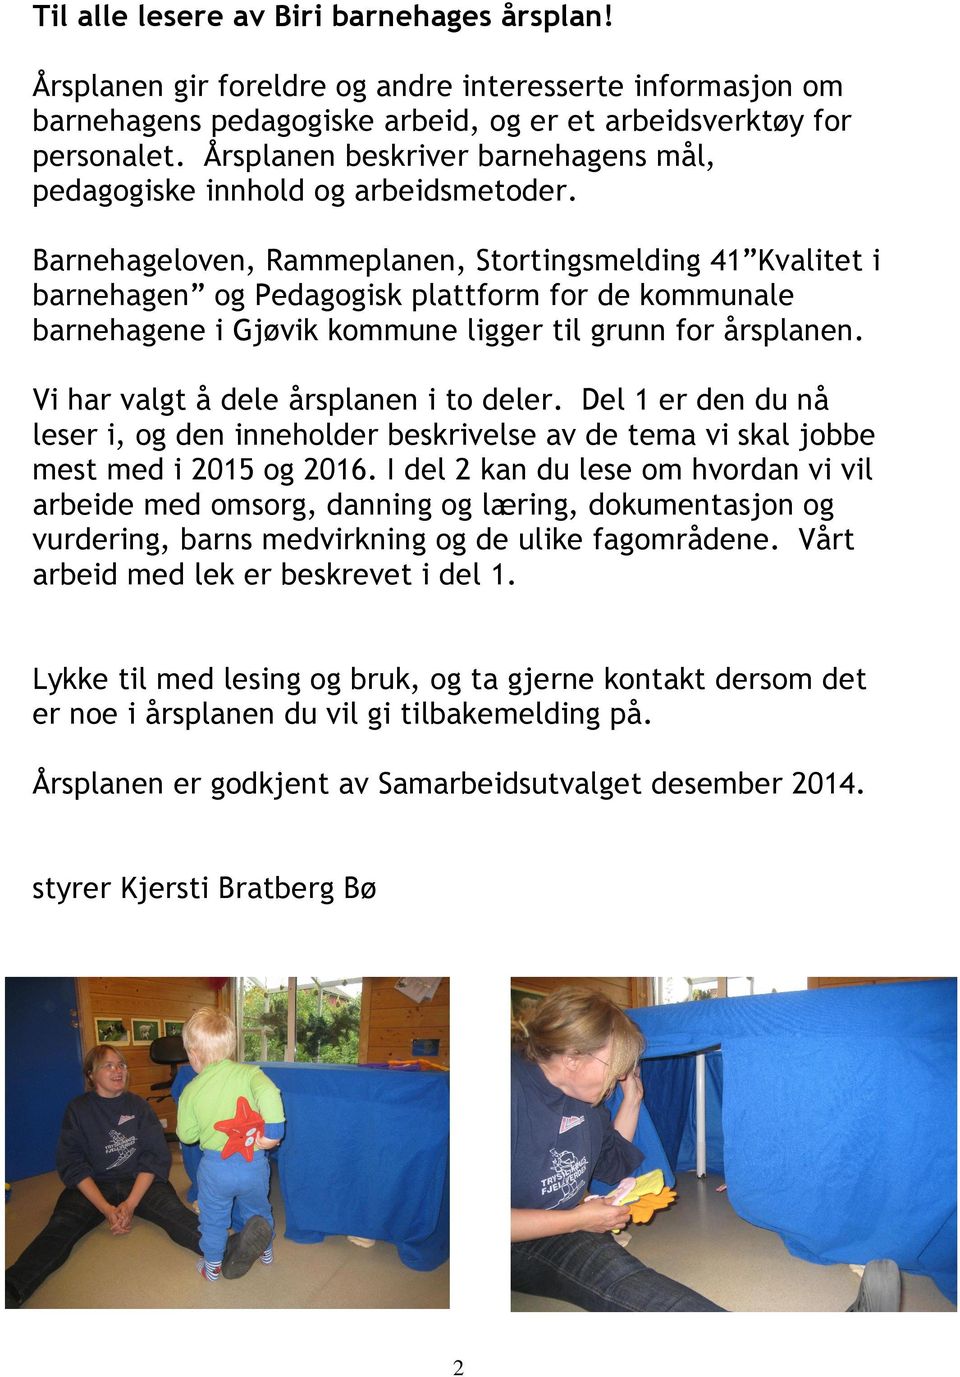 Barnehageloven, Rammeplanen, Stortingsmelding 41 Kvalitet i barnehagen og Pedagogisk plattform for de kommunale barnehagene i Gjøvik kommune ligger til grunn for årsplanen.